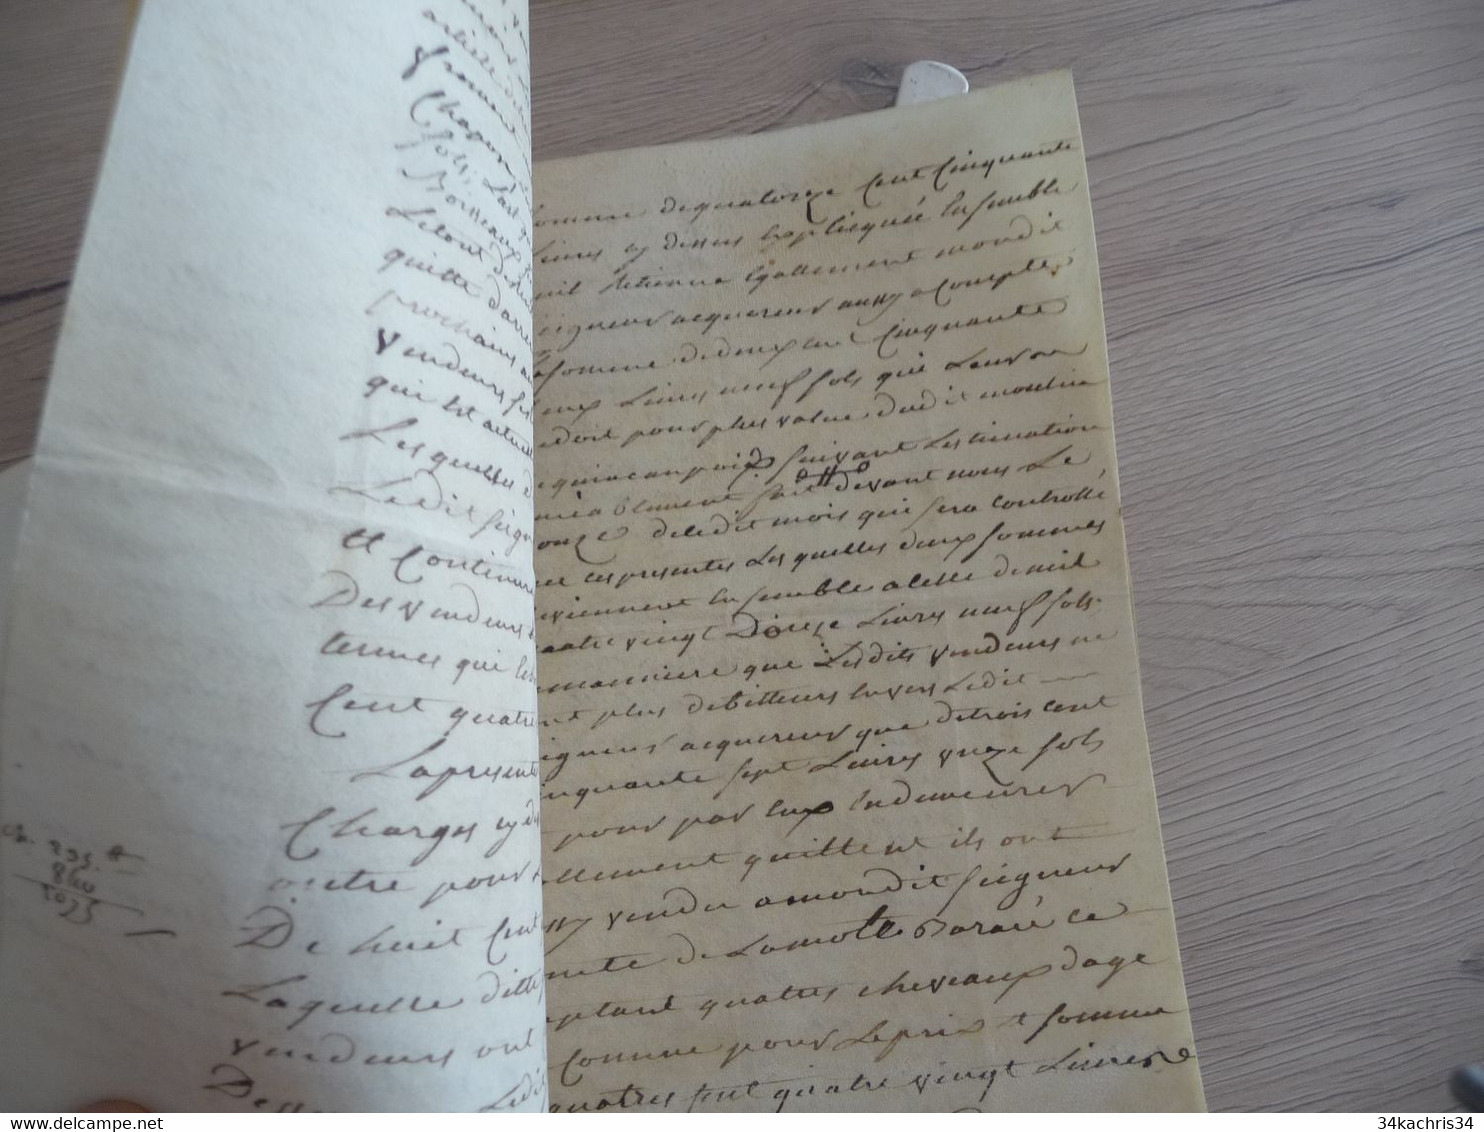 Lettre de ratification pour le moulin de Quincampoix près Savaur et Seuilly sceau 1787